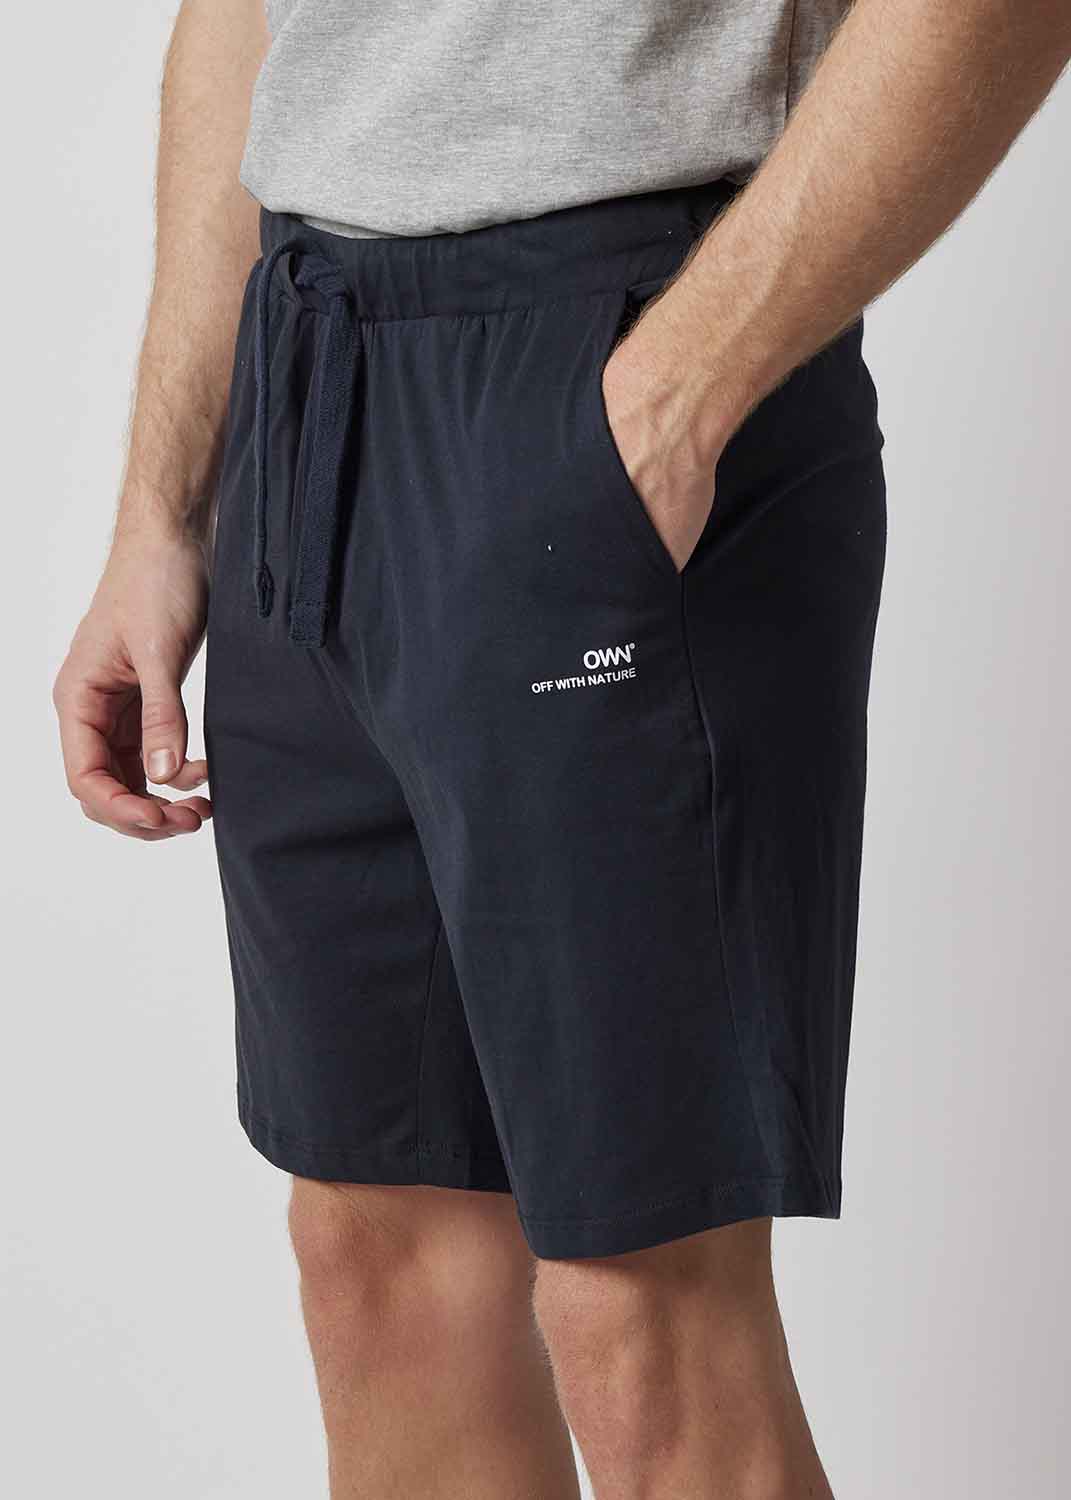 Shorts OWN jersey BLU da uomo in cotone biologico organico_103626